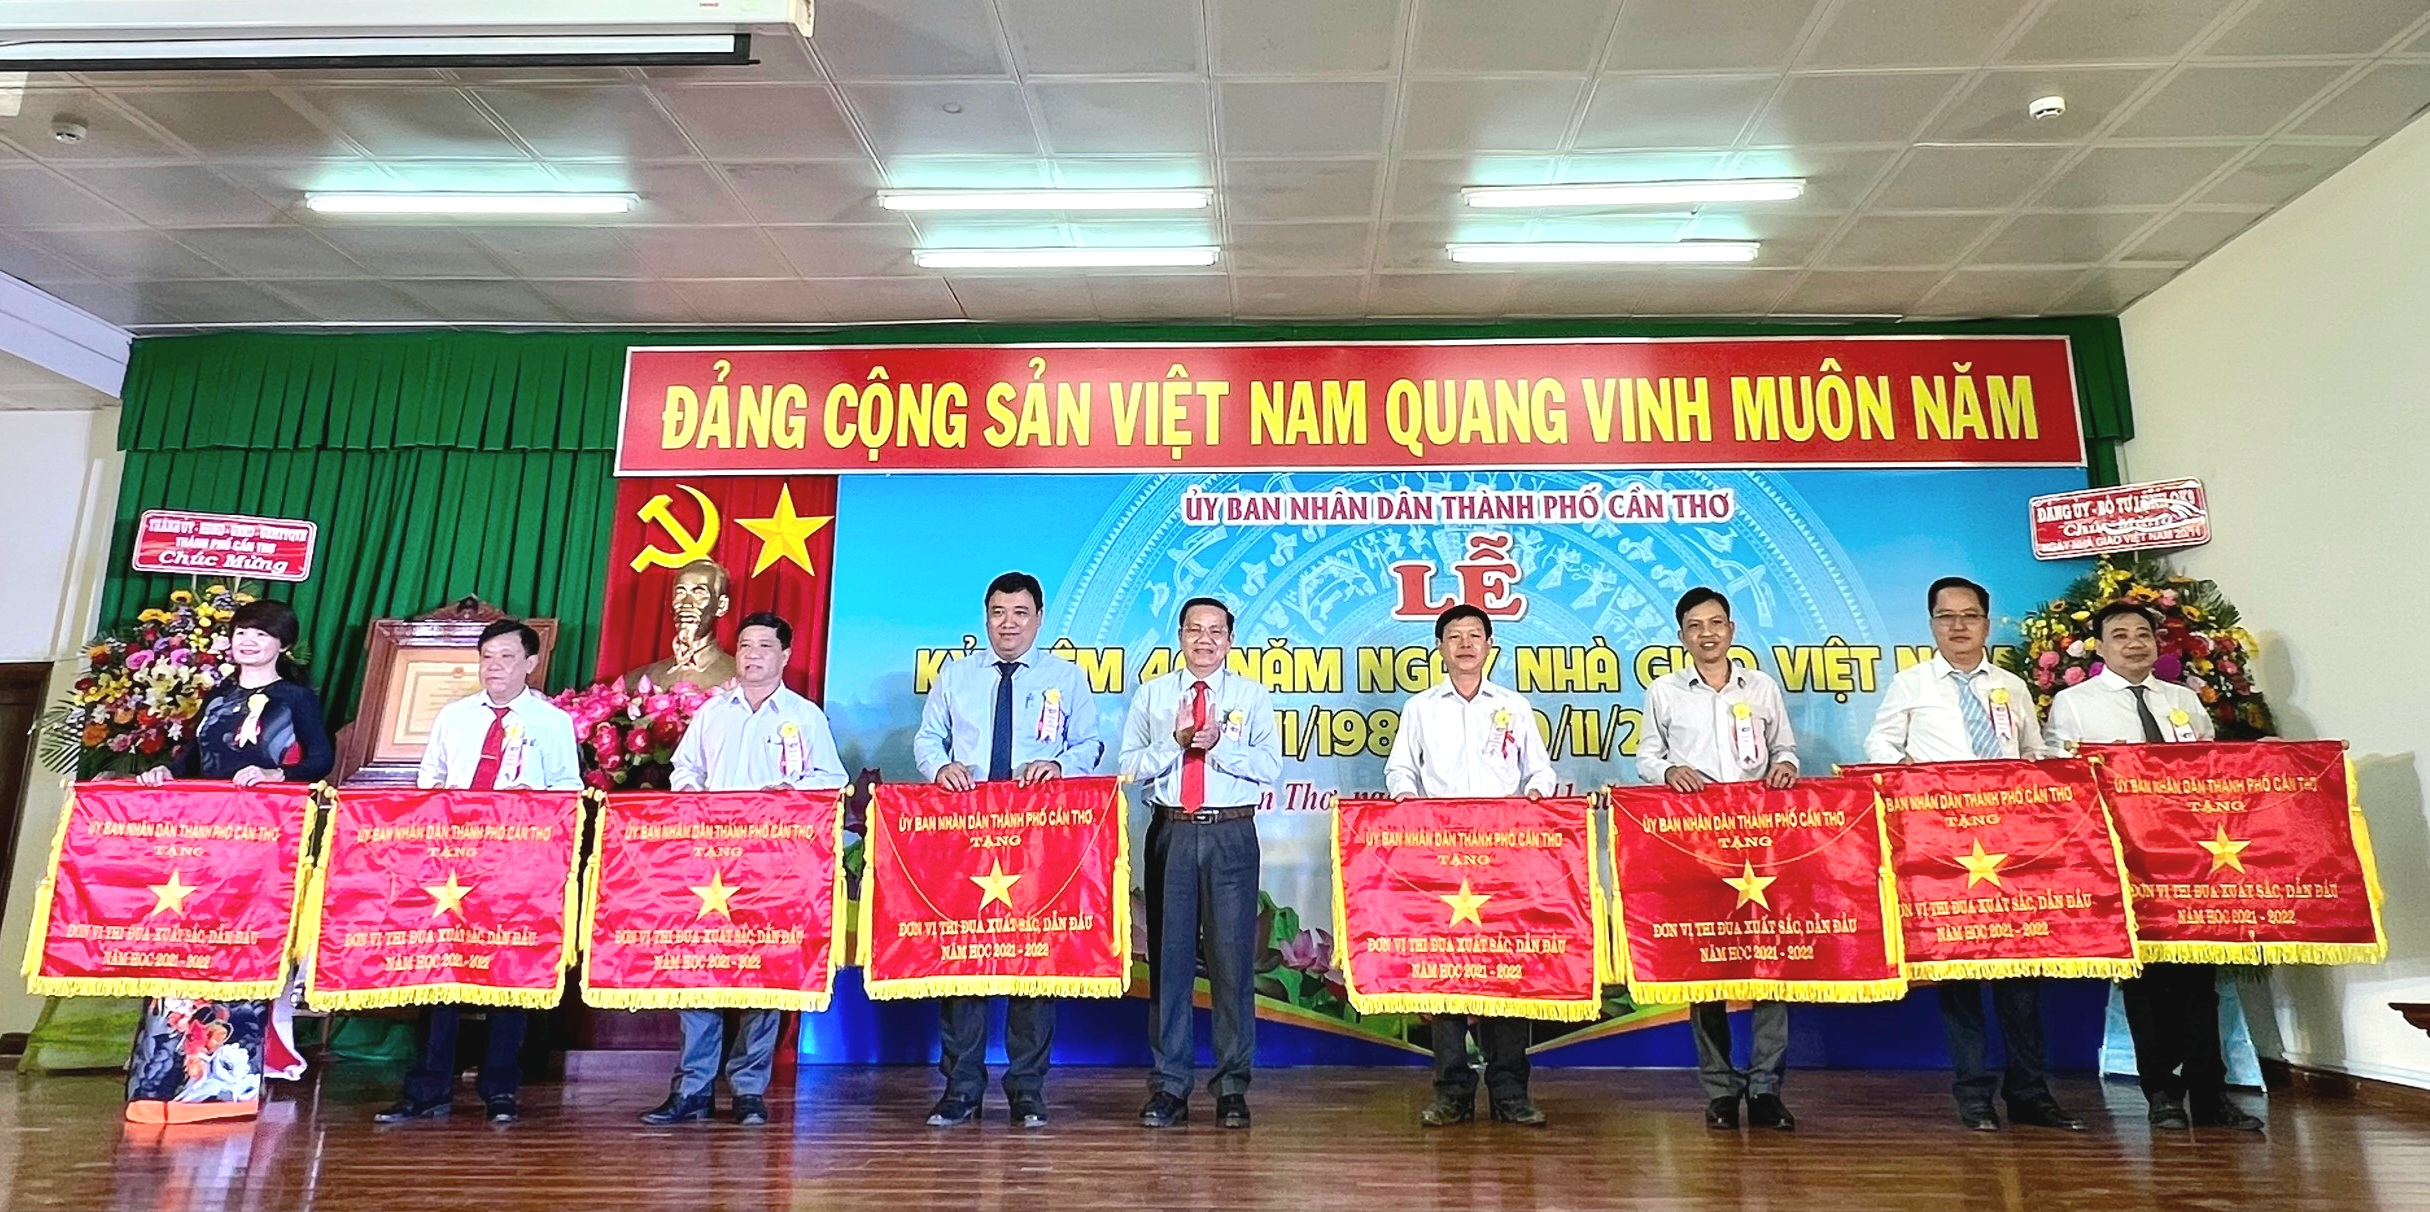 Ông Nguyễn Thành Đông - Phó Chủ tịch HĐND TP. Cần Thơ tặng cờ thi đua của UBND TP. Cần Thơ tặng các đơn vị xuất sắc dẫn đầu.